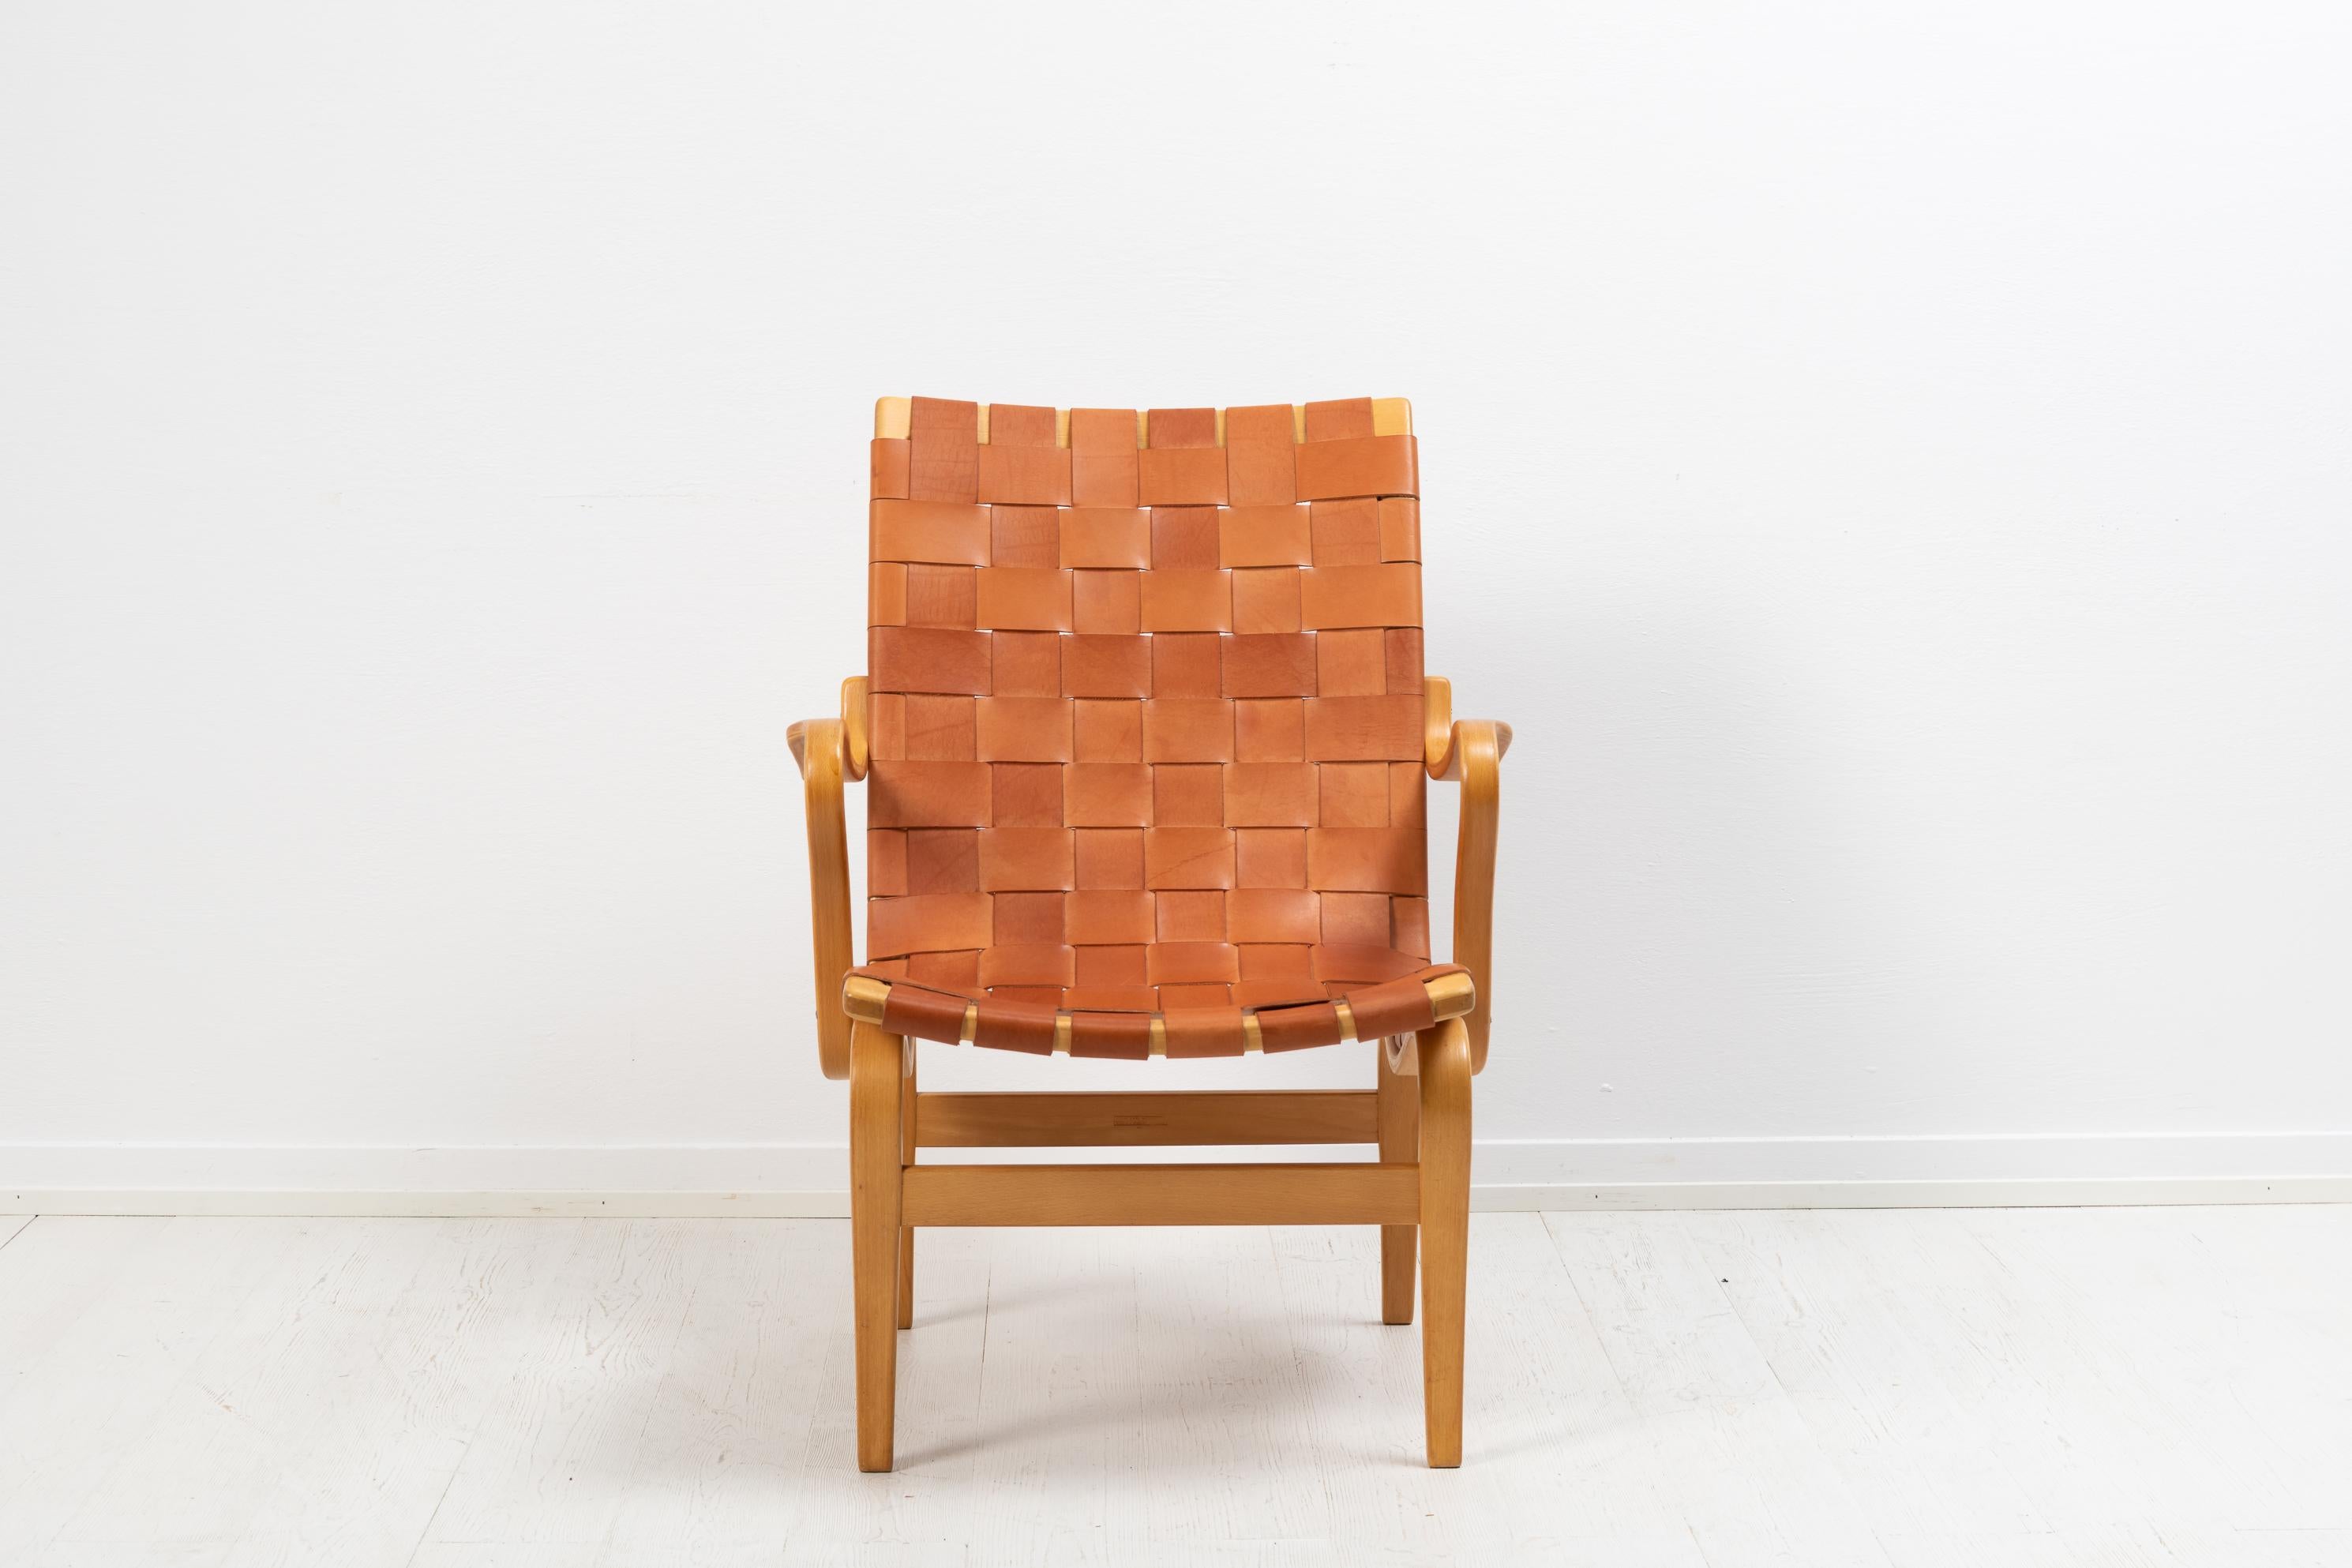 Introducing the Scandinavian modern armchair, the 